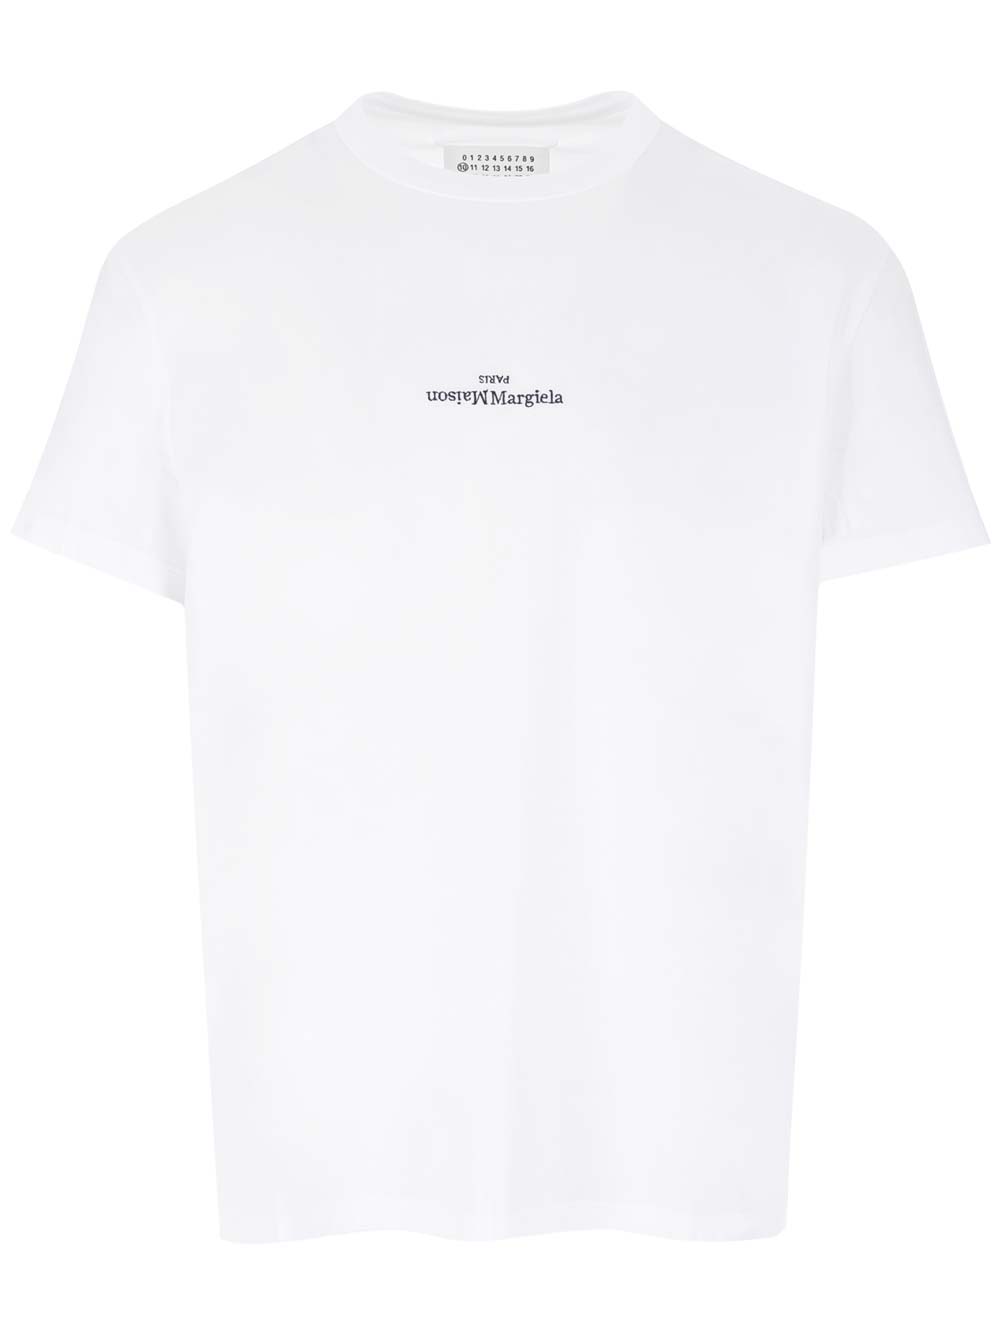 Maison Margiela White T-shirt